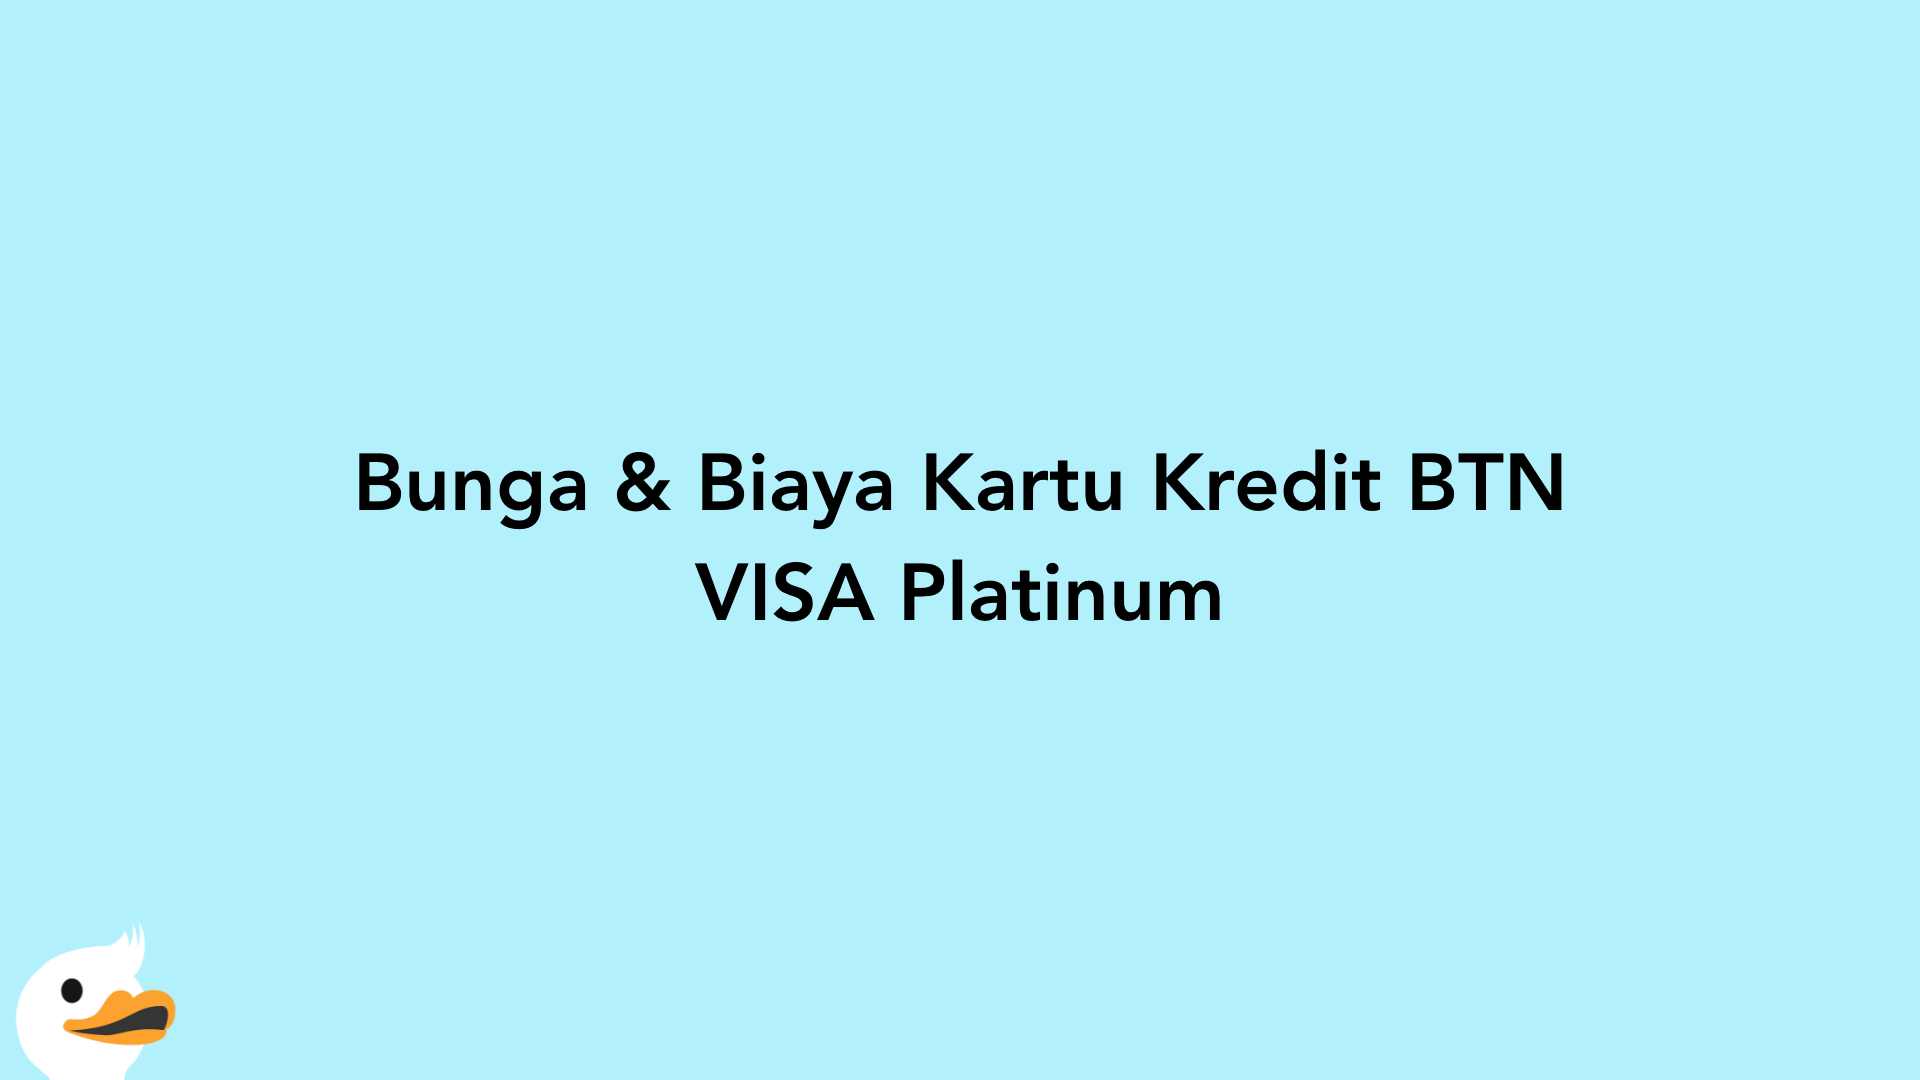 Bunga & Biaya Kartu Kredit BTN VISA Platinum